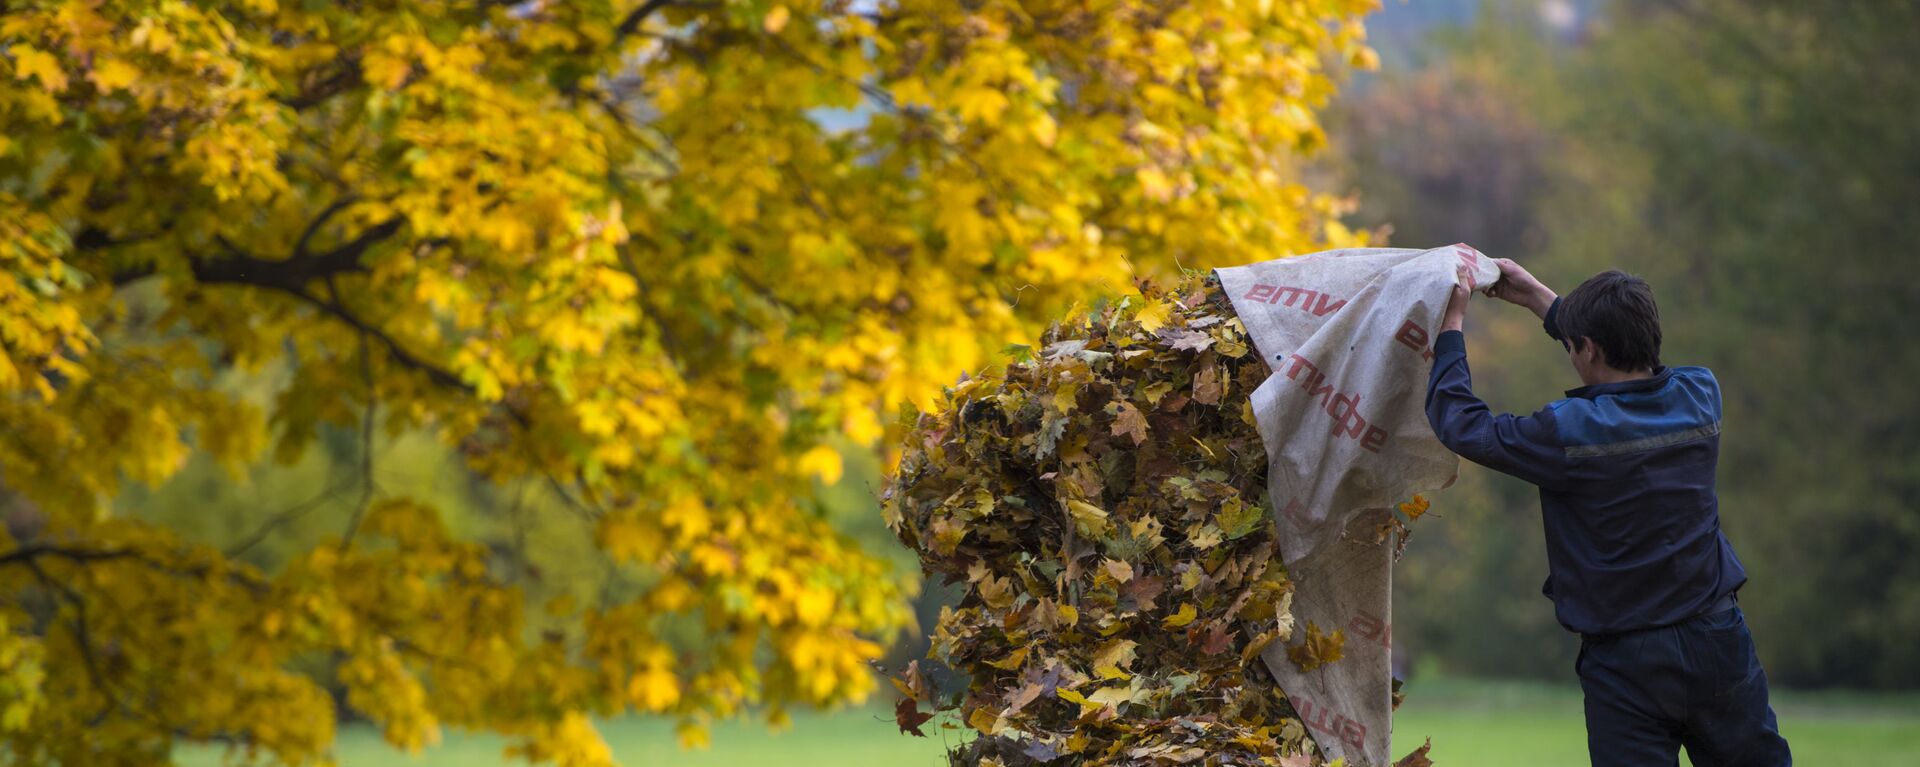 Дворник собирает опавшие с деревьев листья в парке Коломенское в Москве - Sputnik Армения, 1920, 26.10.2020